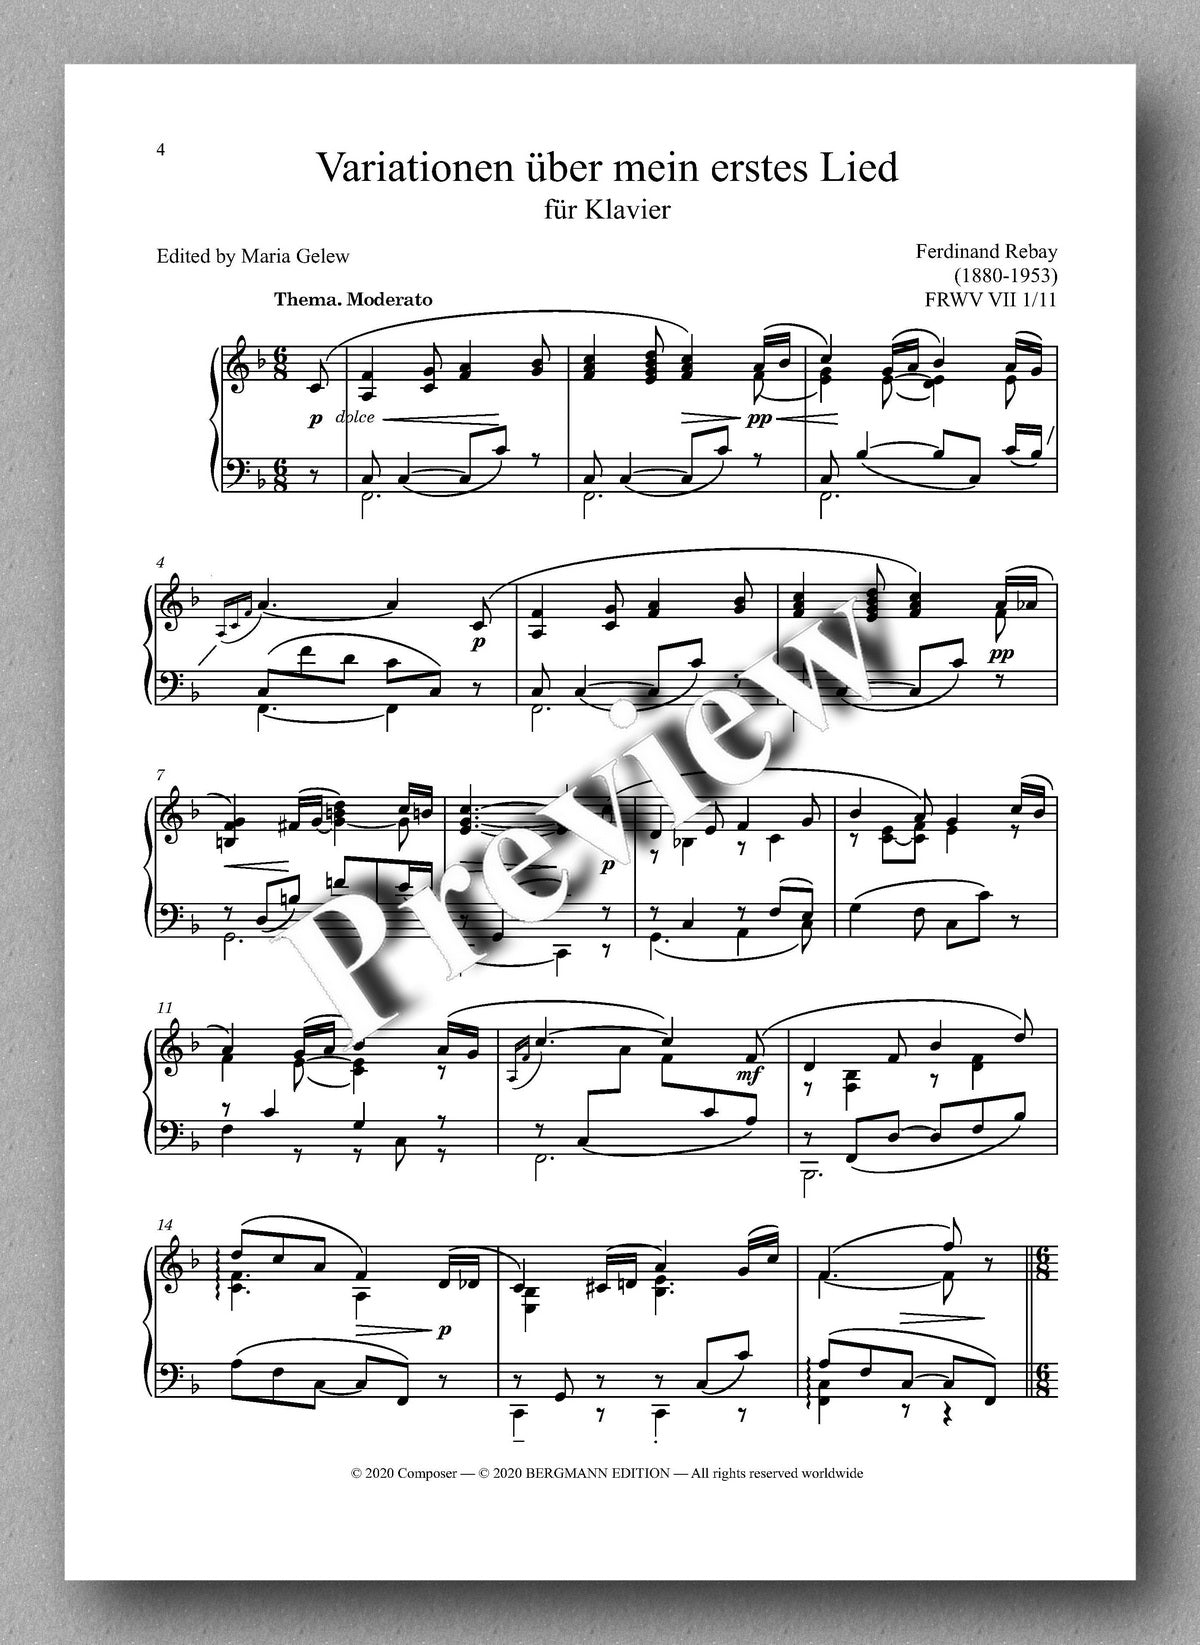 Rebay, Klavier No. 7, Variationen über mein erstes Lied -music score 1